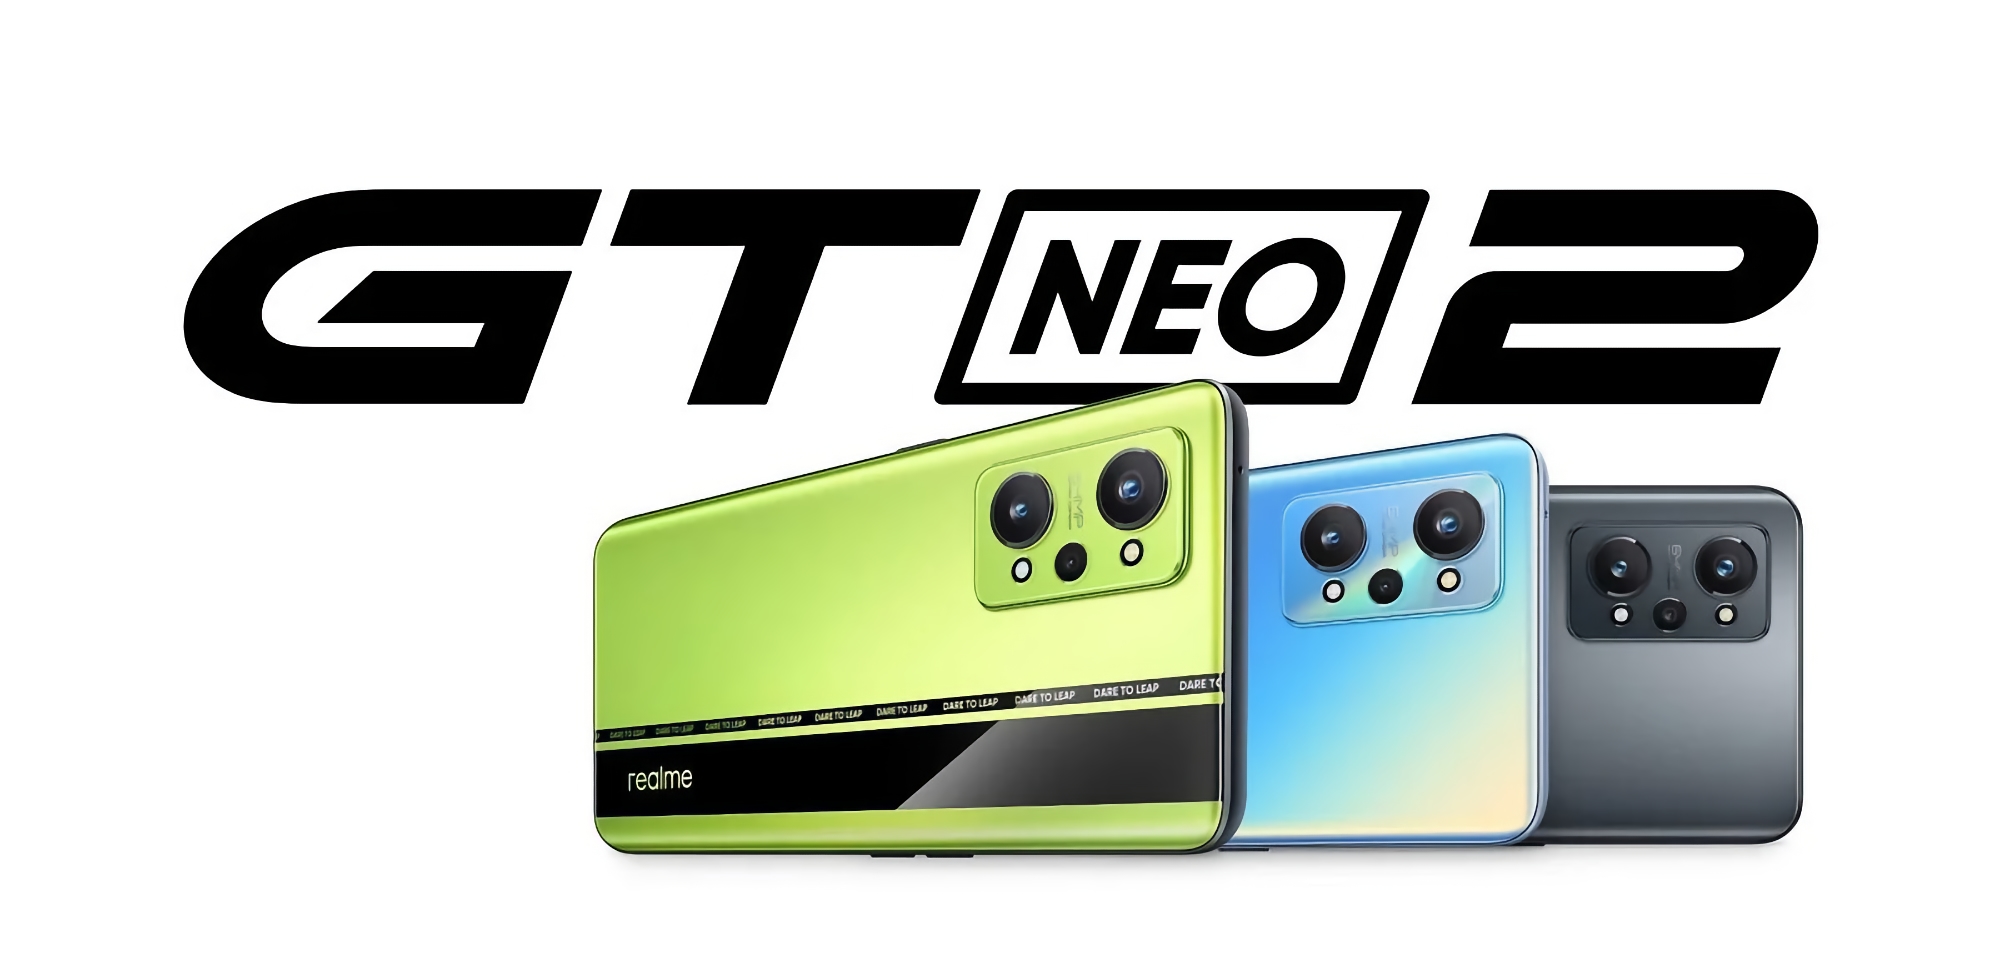 Ya es oficial: el Realme GT Neo 2 con chip Snapdragon 870 y triple cámara de 64 MP se presenta en Europa el 15 de noviembre